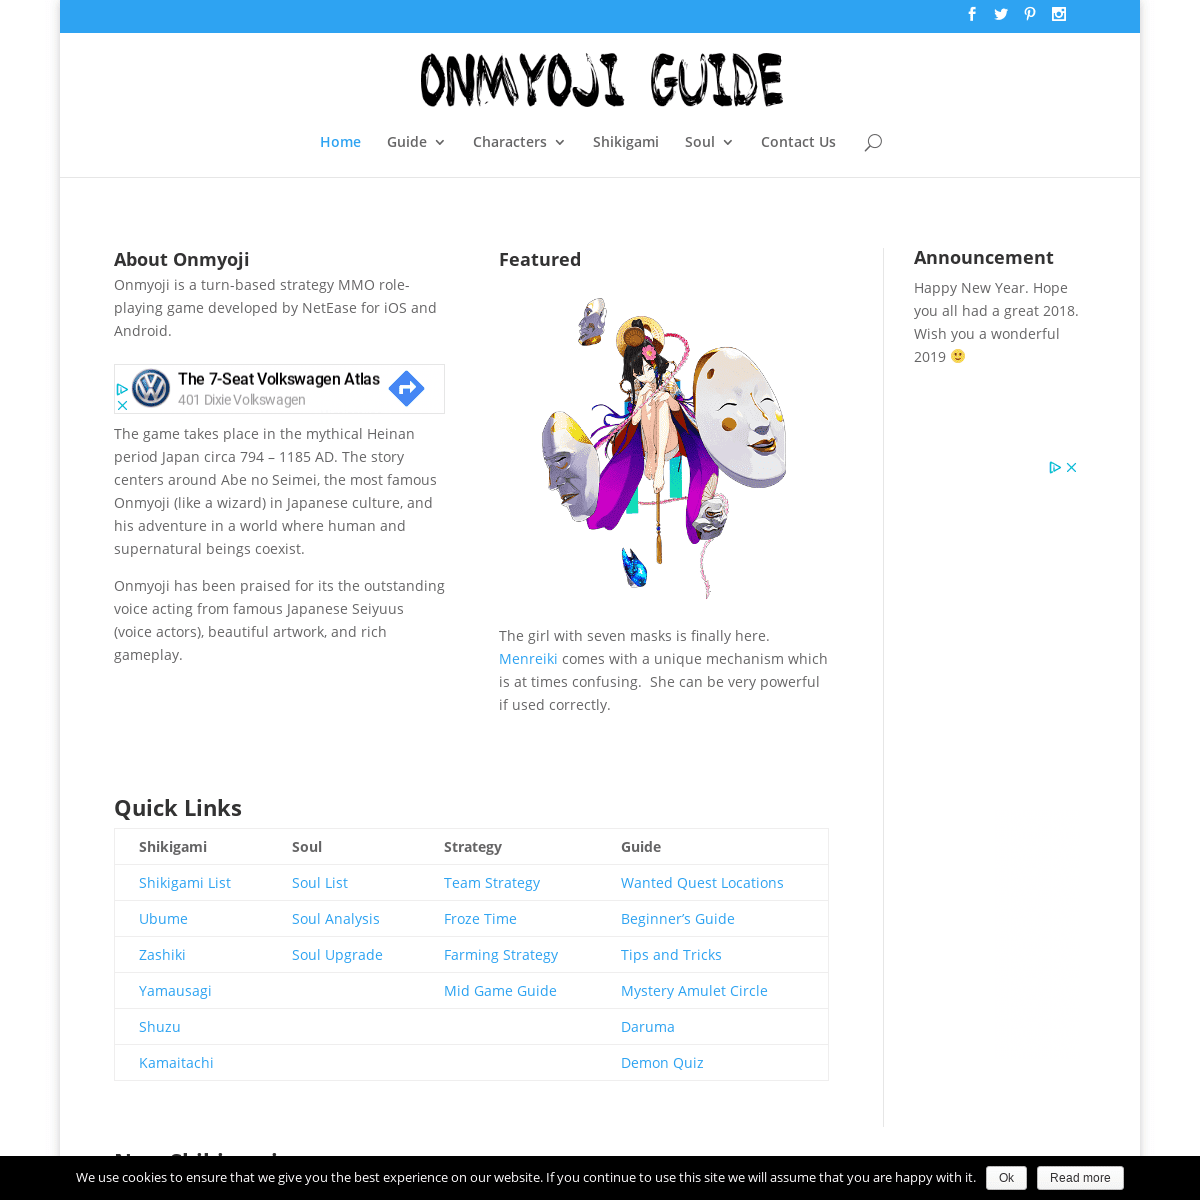 Onmyoji Guide - A fan made English Guide for Onmyoji Mobile Game